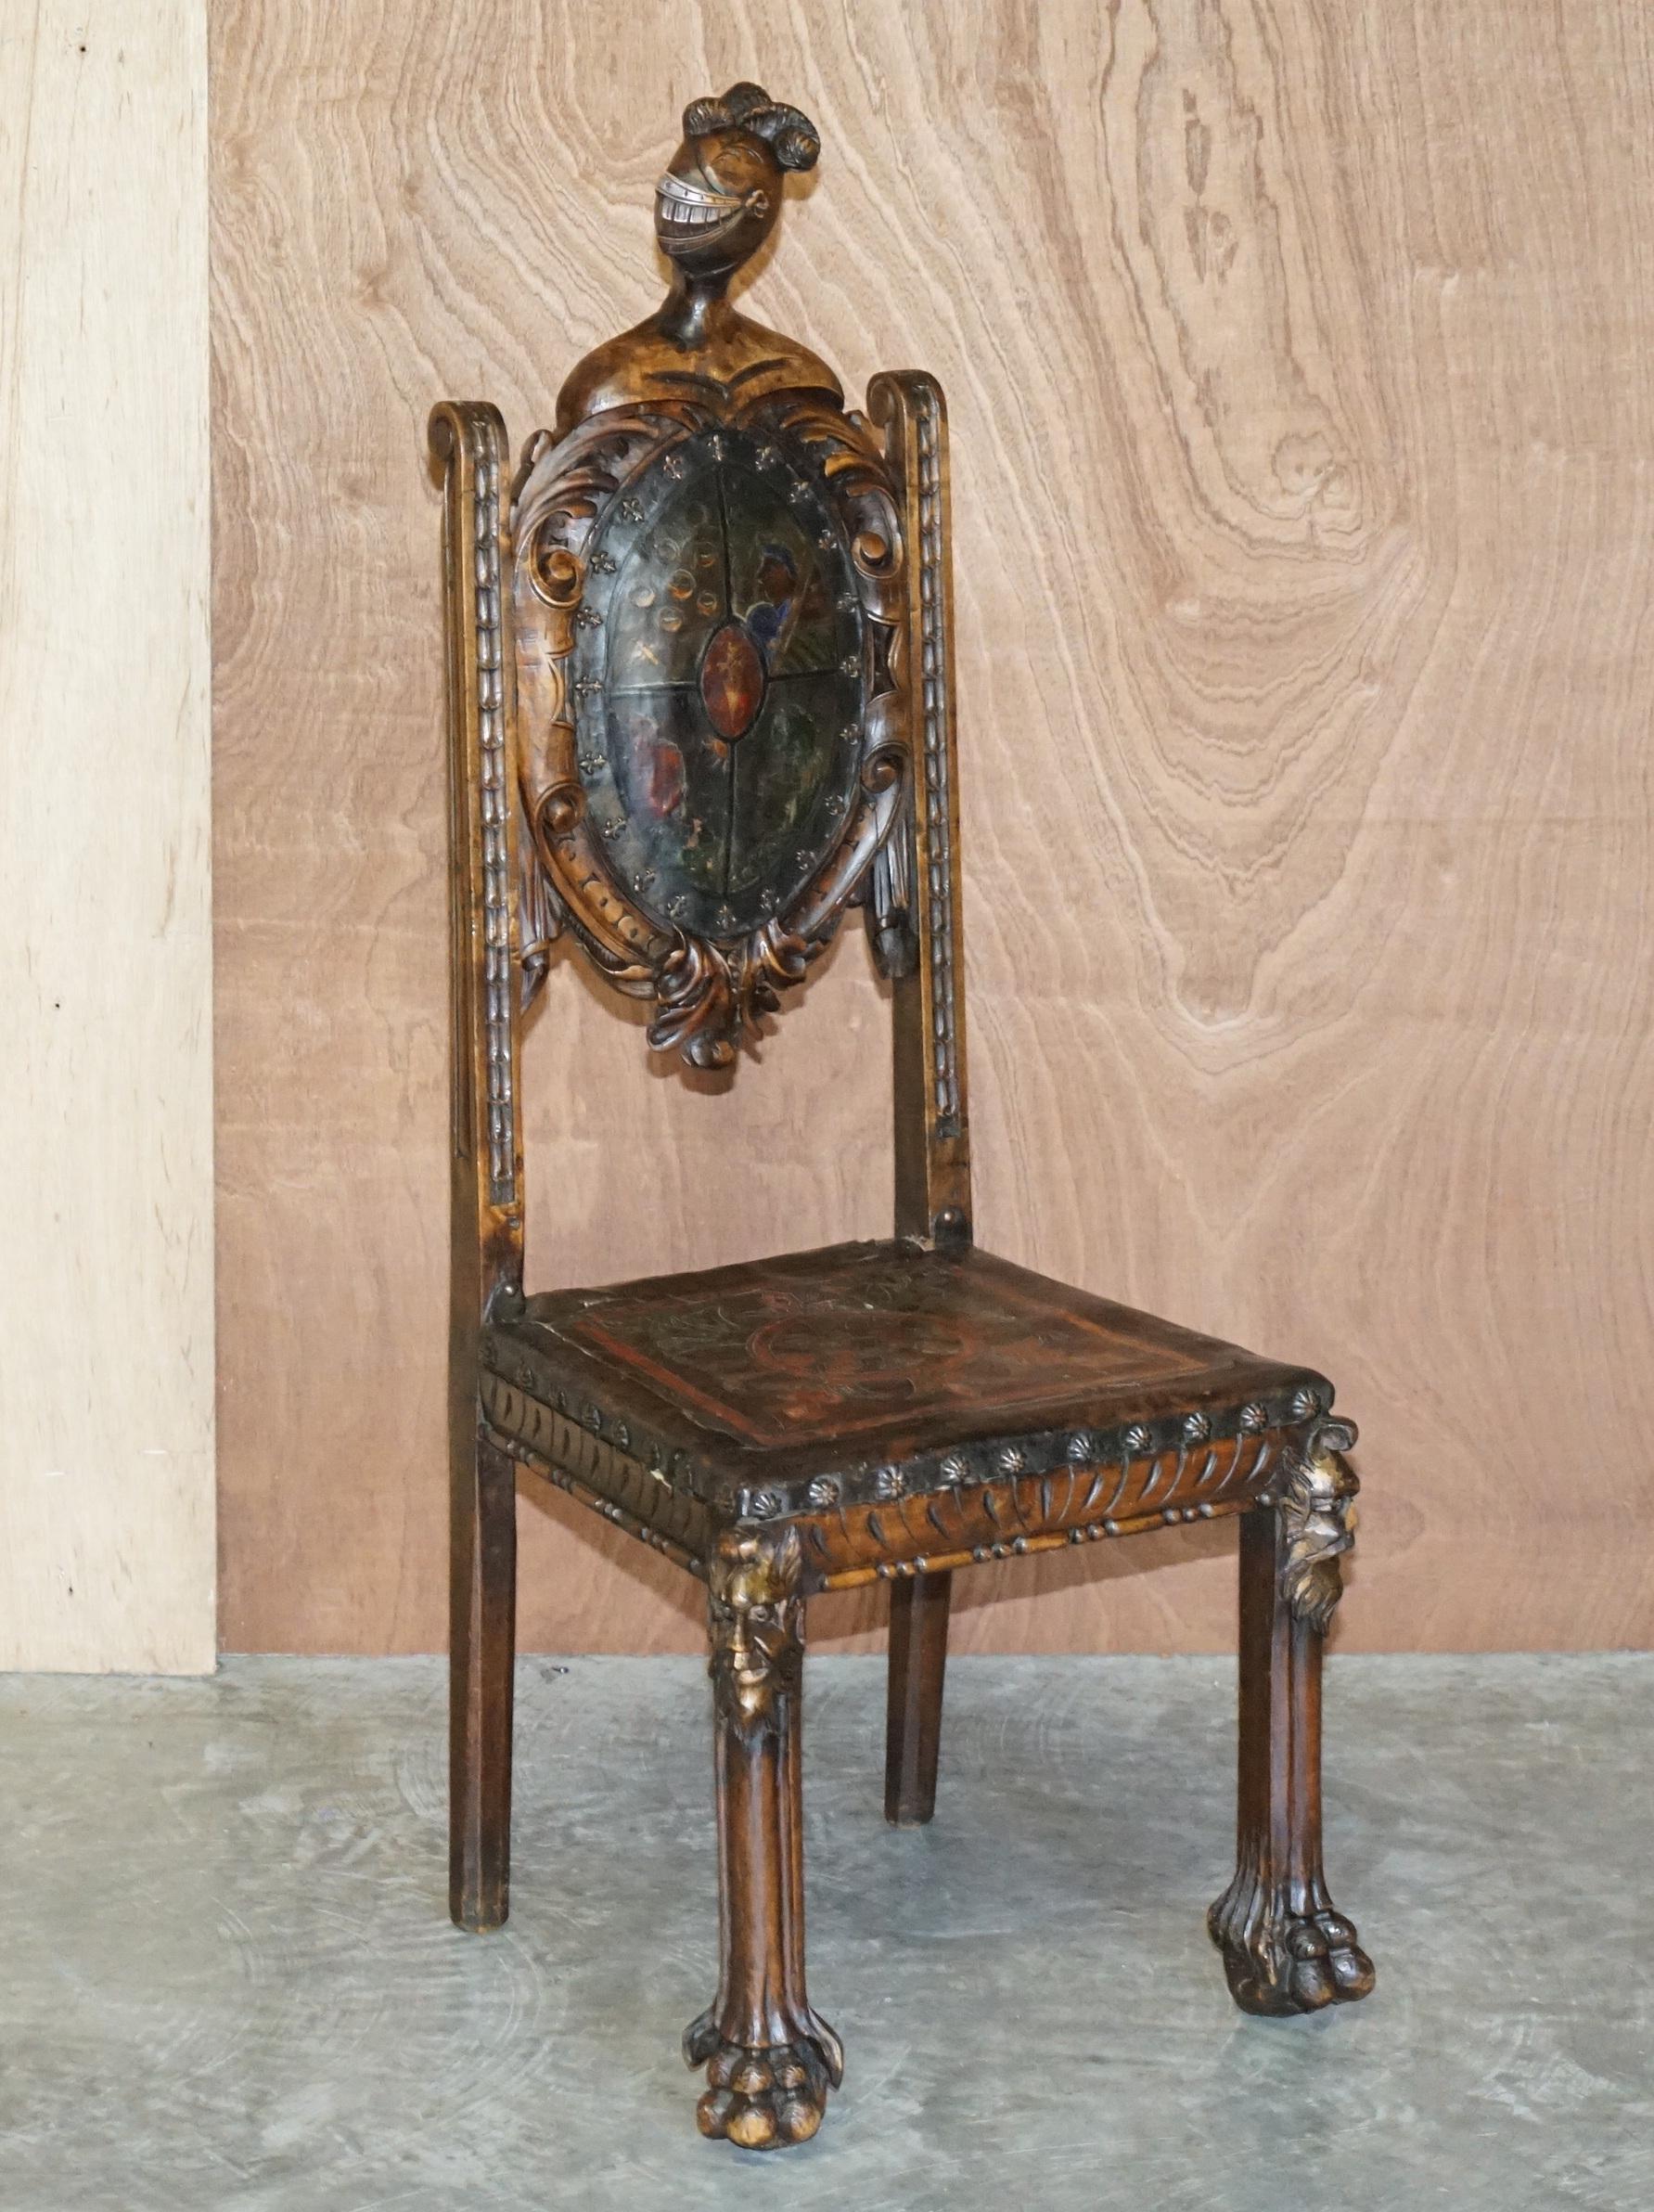 Wir freuen uns, diese schöne antike Hand geschnitzten Thron Stuhl mit geprägten Hand gemalt Wappen auf der Rückseite und Ritter Helm auf der Oberseite bieten

Was für ein Stuhl! Dies ist das schönste Kunstmöbel, das ich je gesehen habe. Der Rahmen